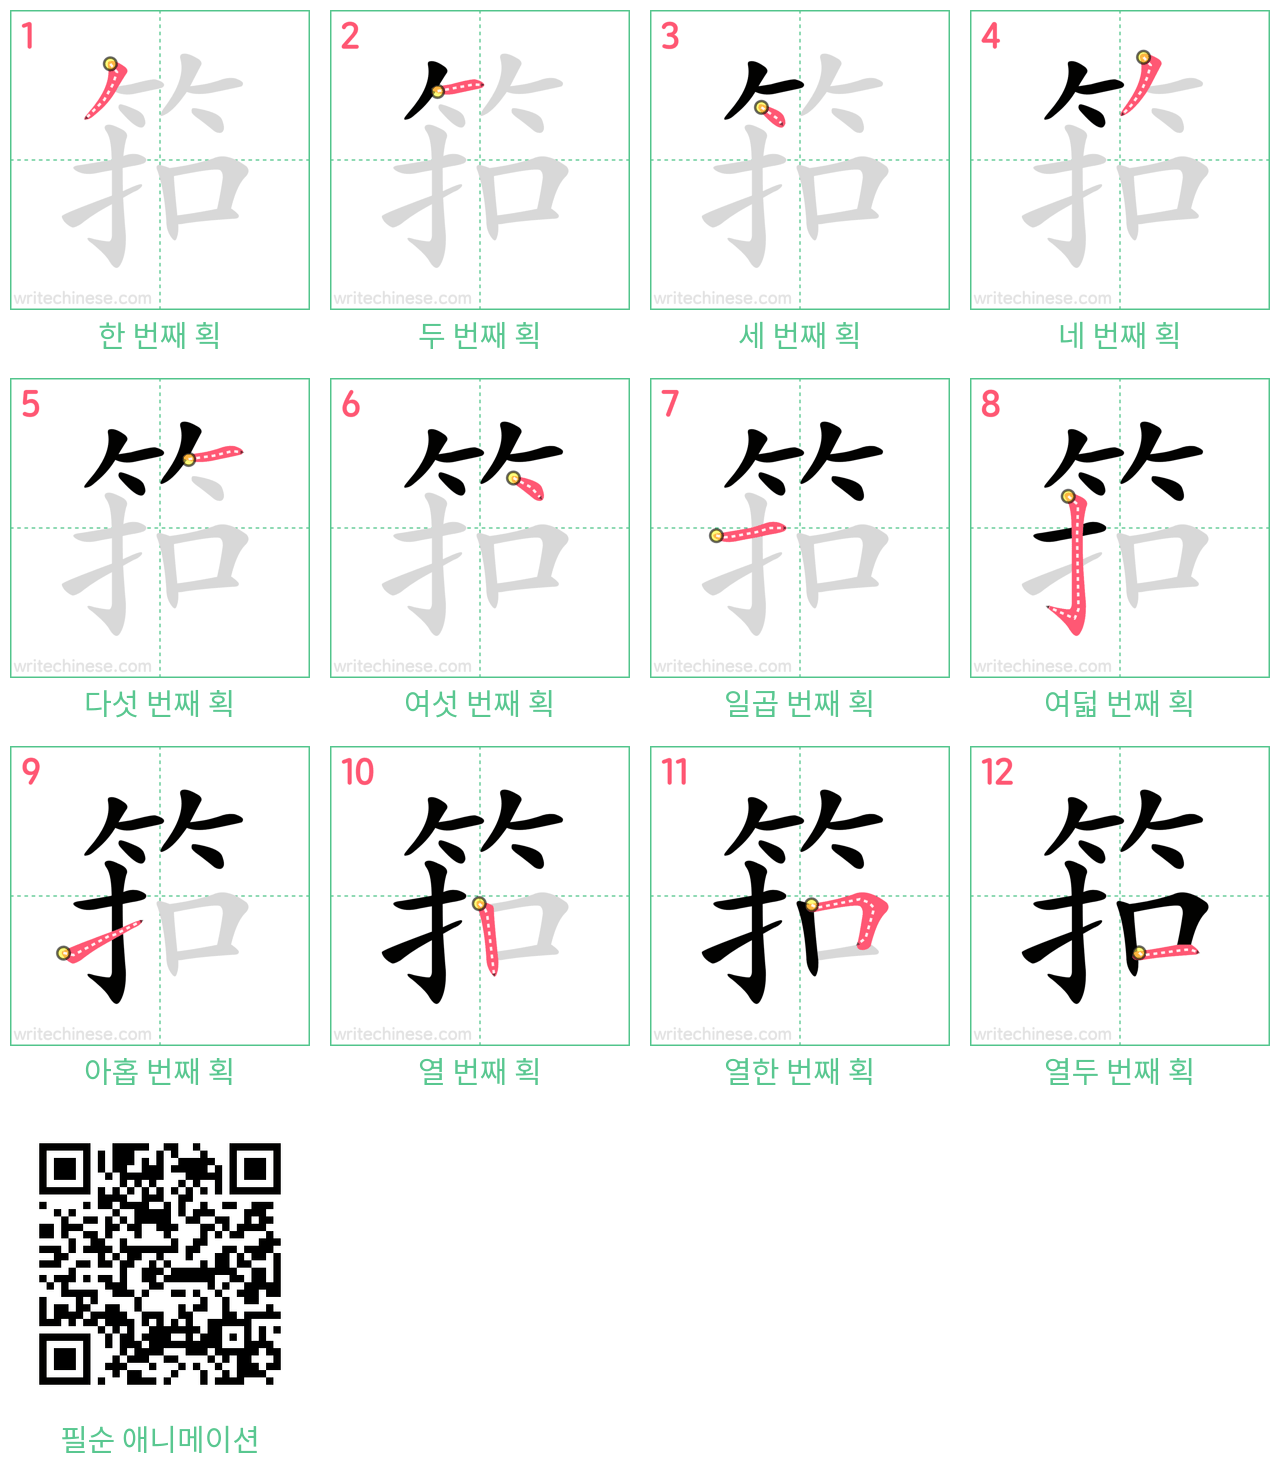 筘 step-by-step stroke order diagrams